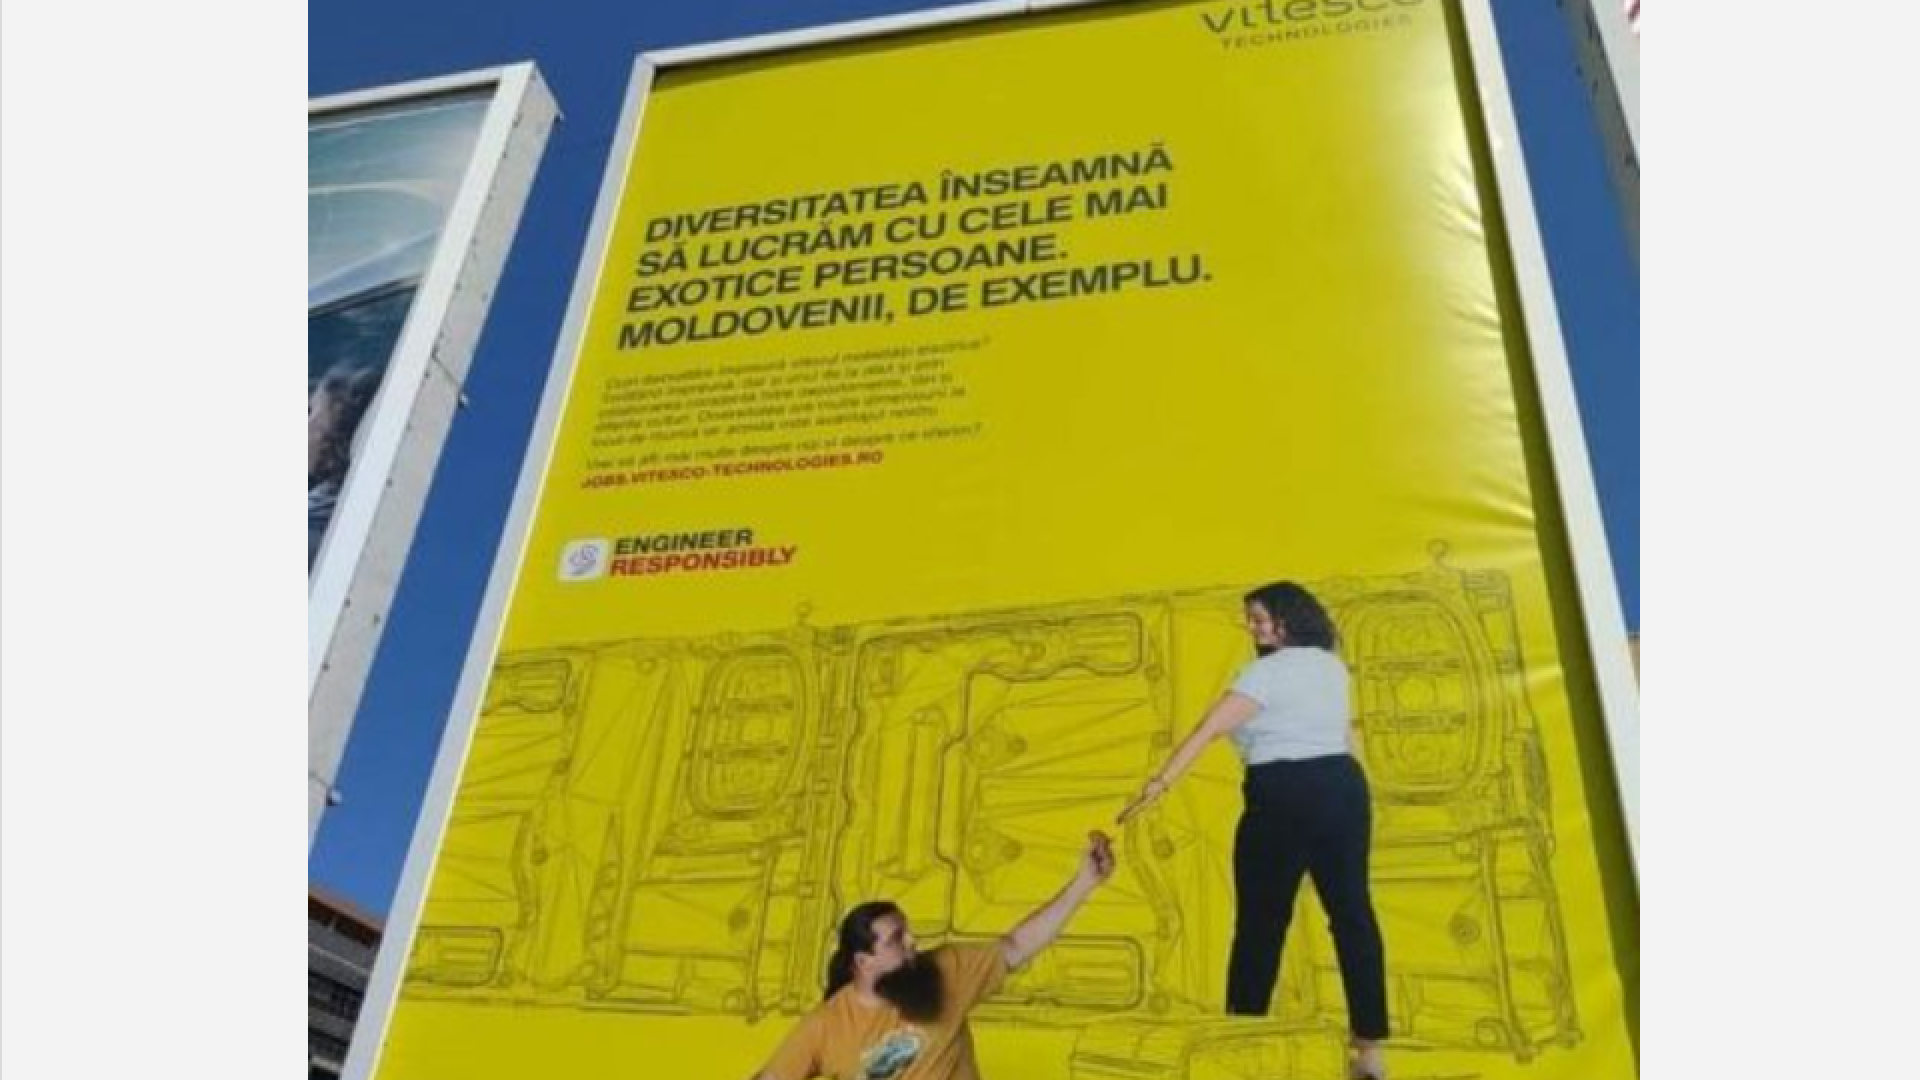 O reclamă din Timișoara despre moldoveni agită spiritele. De la ”o mitocănie”, la ”de când suntem noi așa panseluțe?”